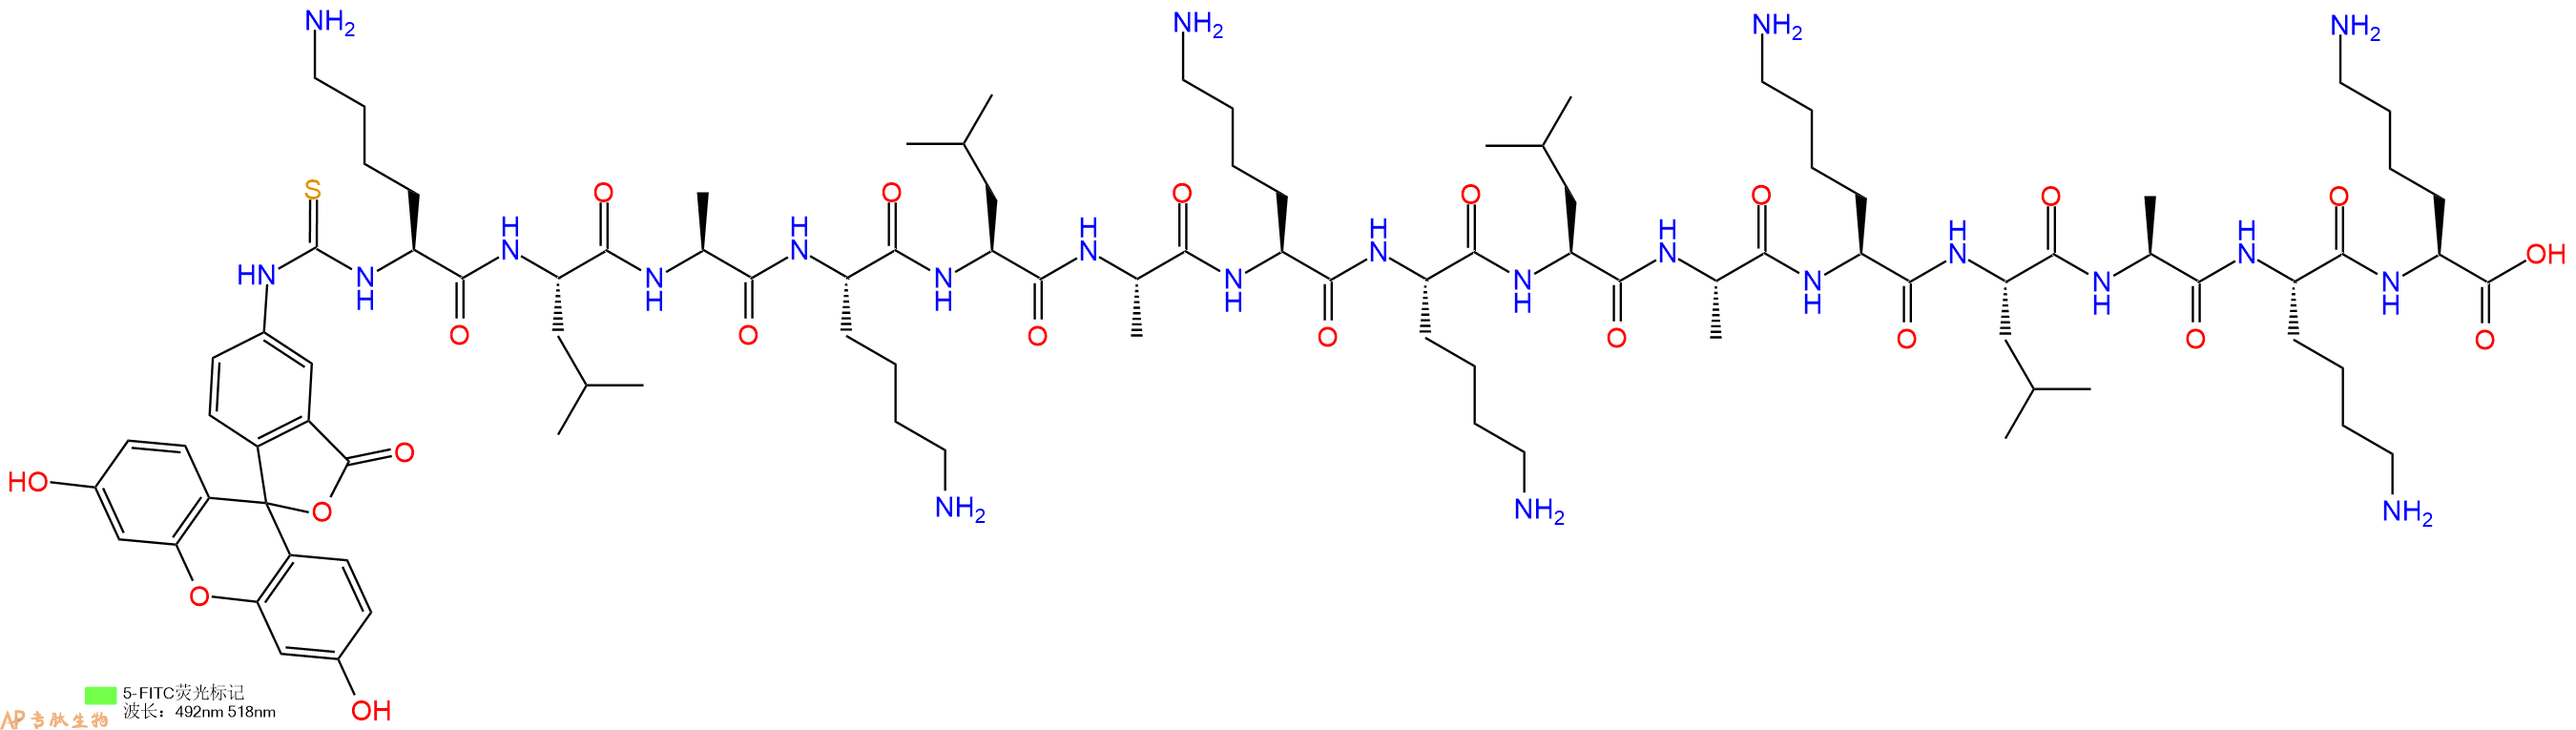 专肽生物产品十五肽Fitc-KLAKLAKKLAKLAKK